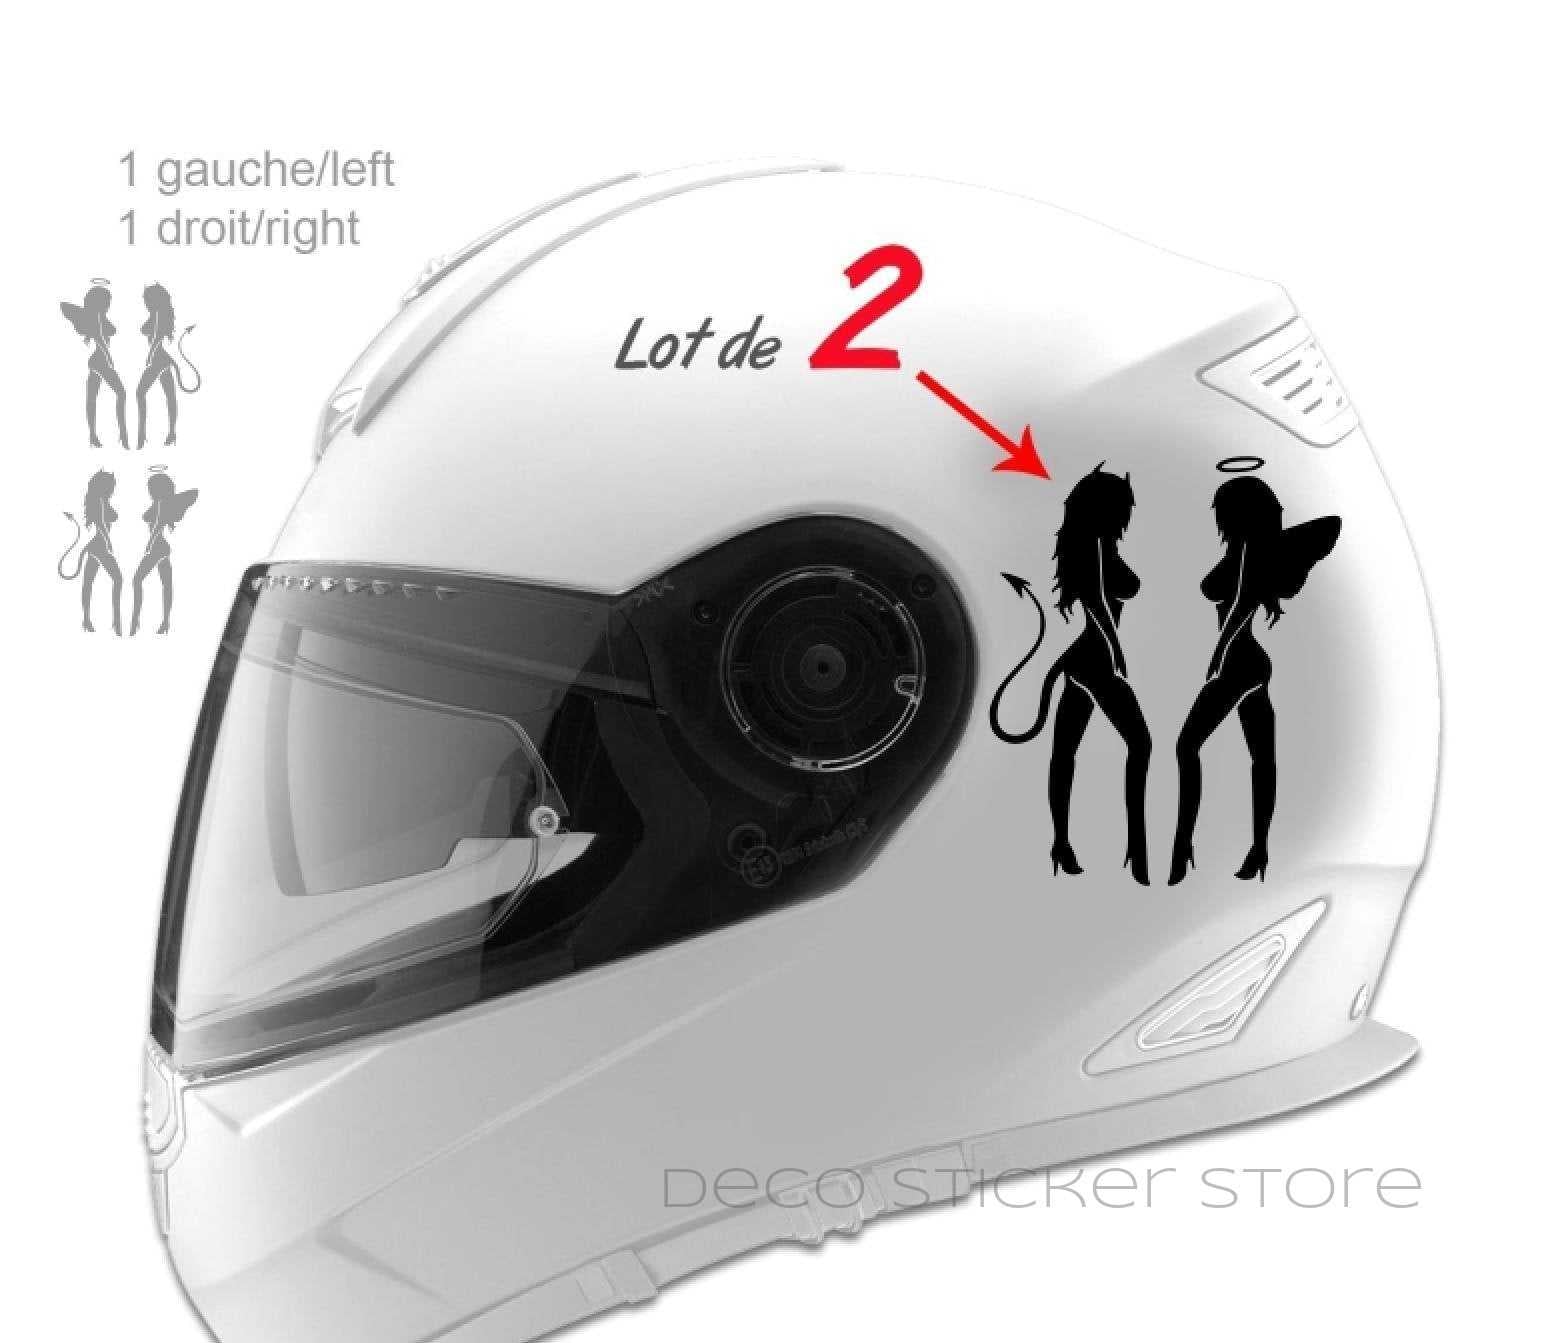 Lot de 2 stickers autocollants casque moto filles démoniaques- - Déco  Sticker Store-14.90€